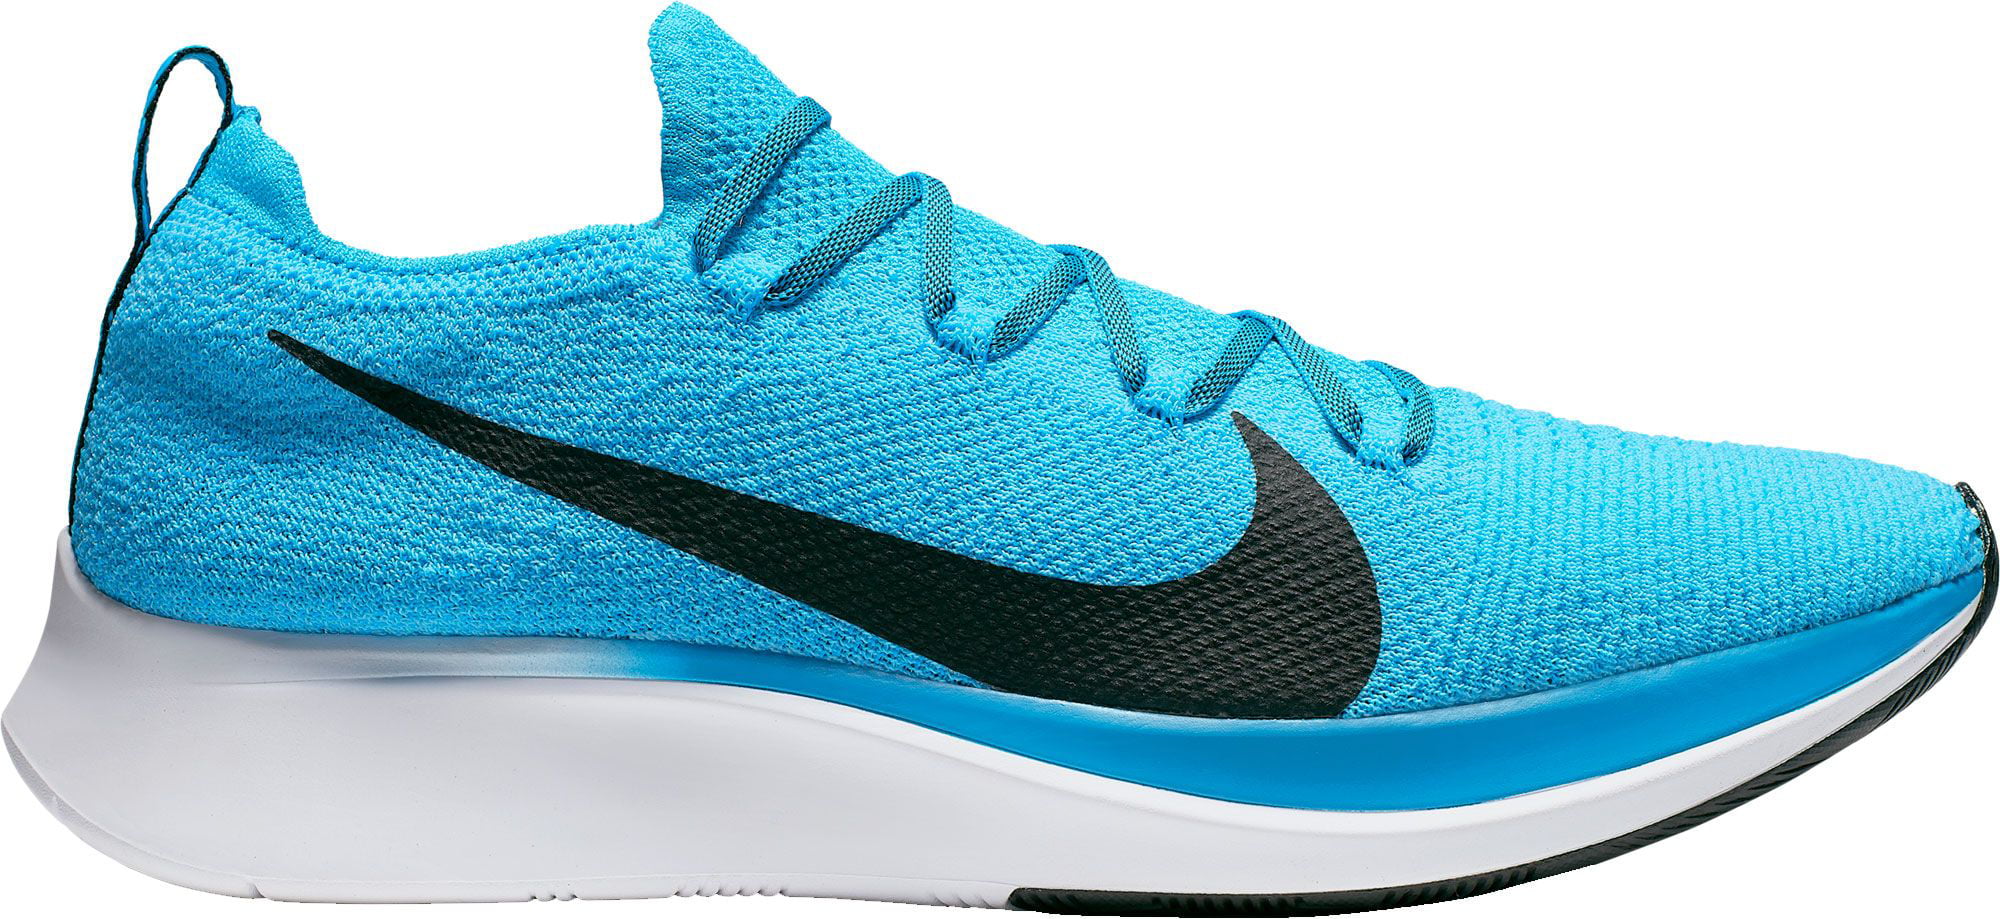 Nike - Nike Men's Zoom Fly Flyknit Running Shoes - Walmart ...